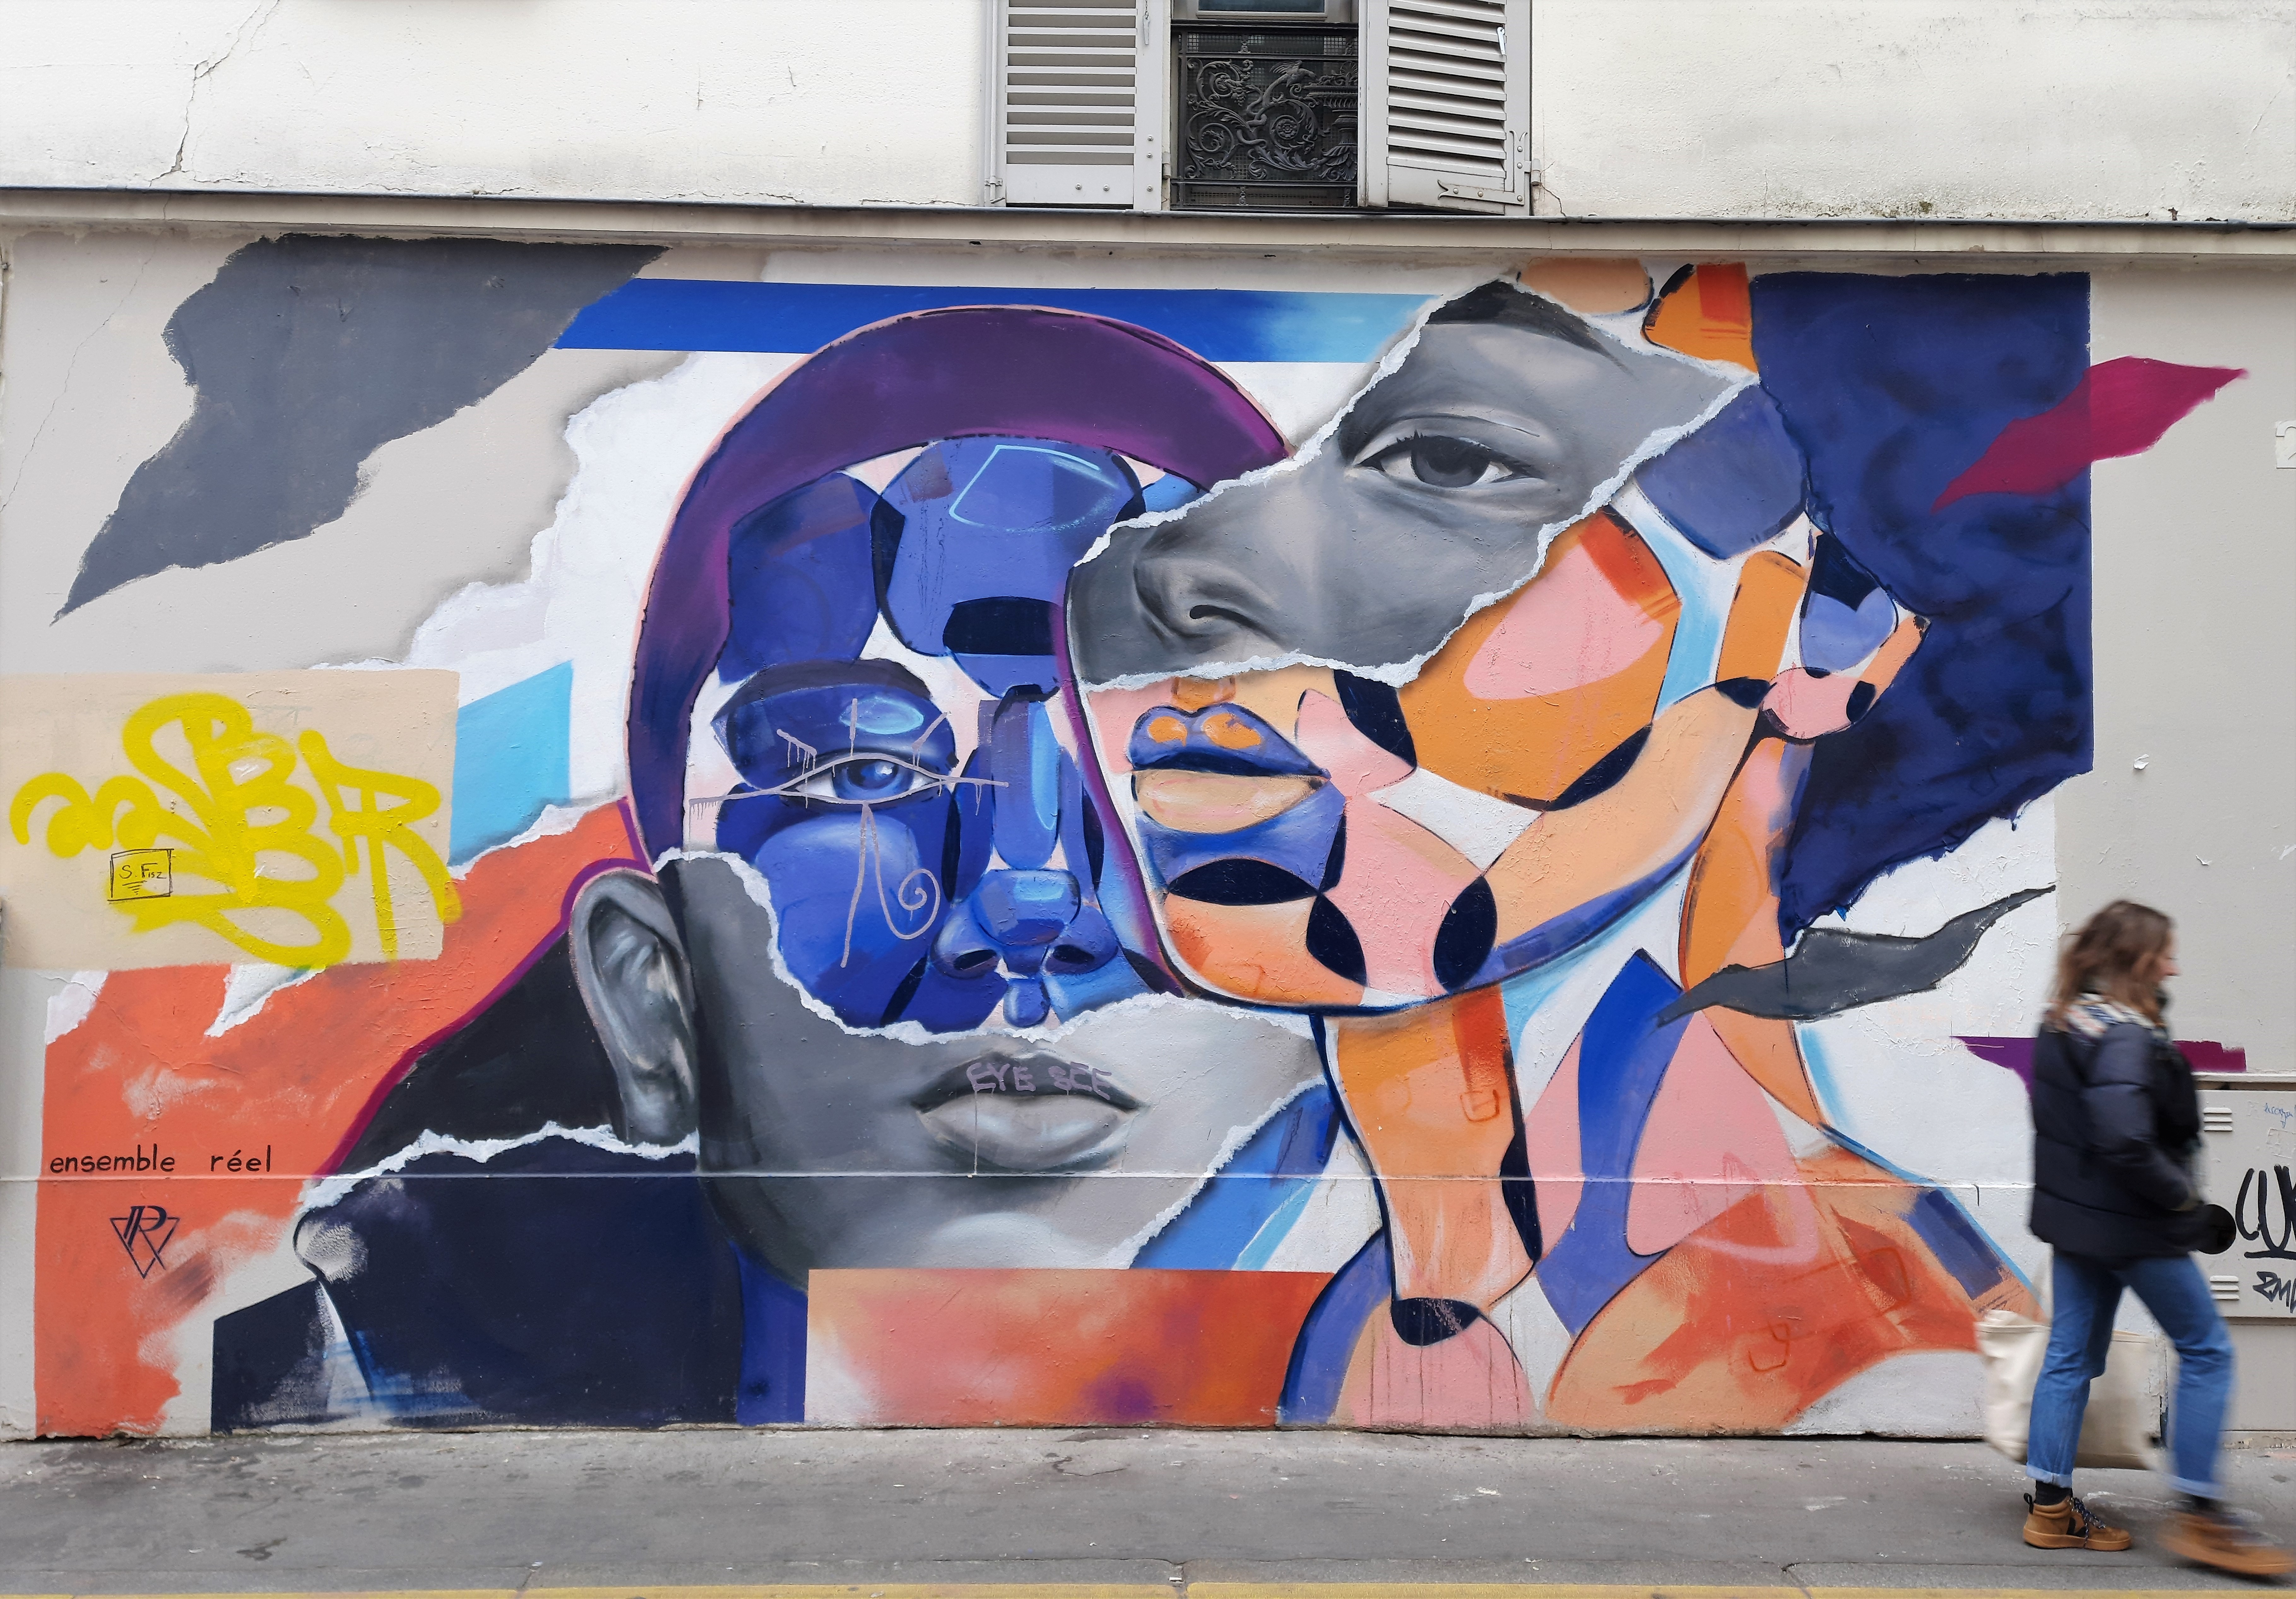 Graffiti 6535 ENSEMBLE REEL de Ensemble Réel capturé par Mephisroth à Paris France